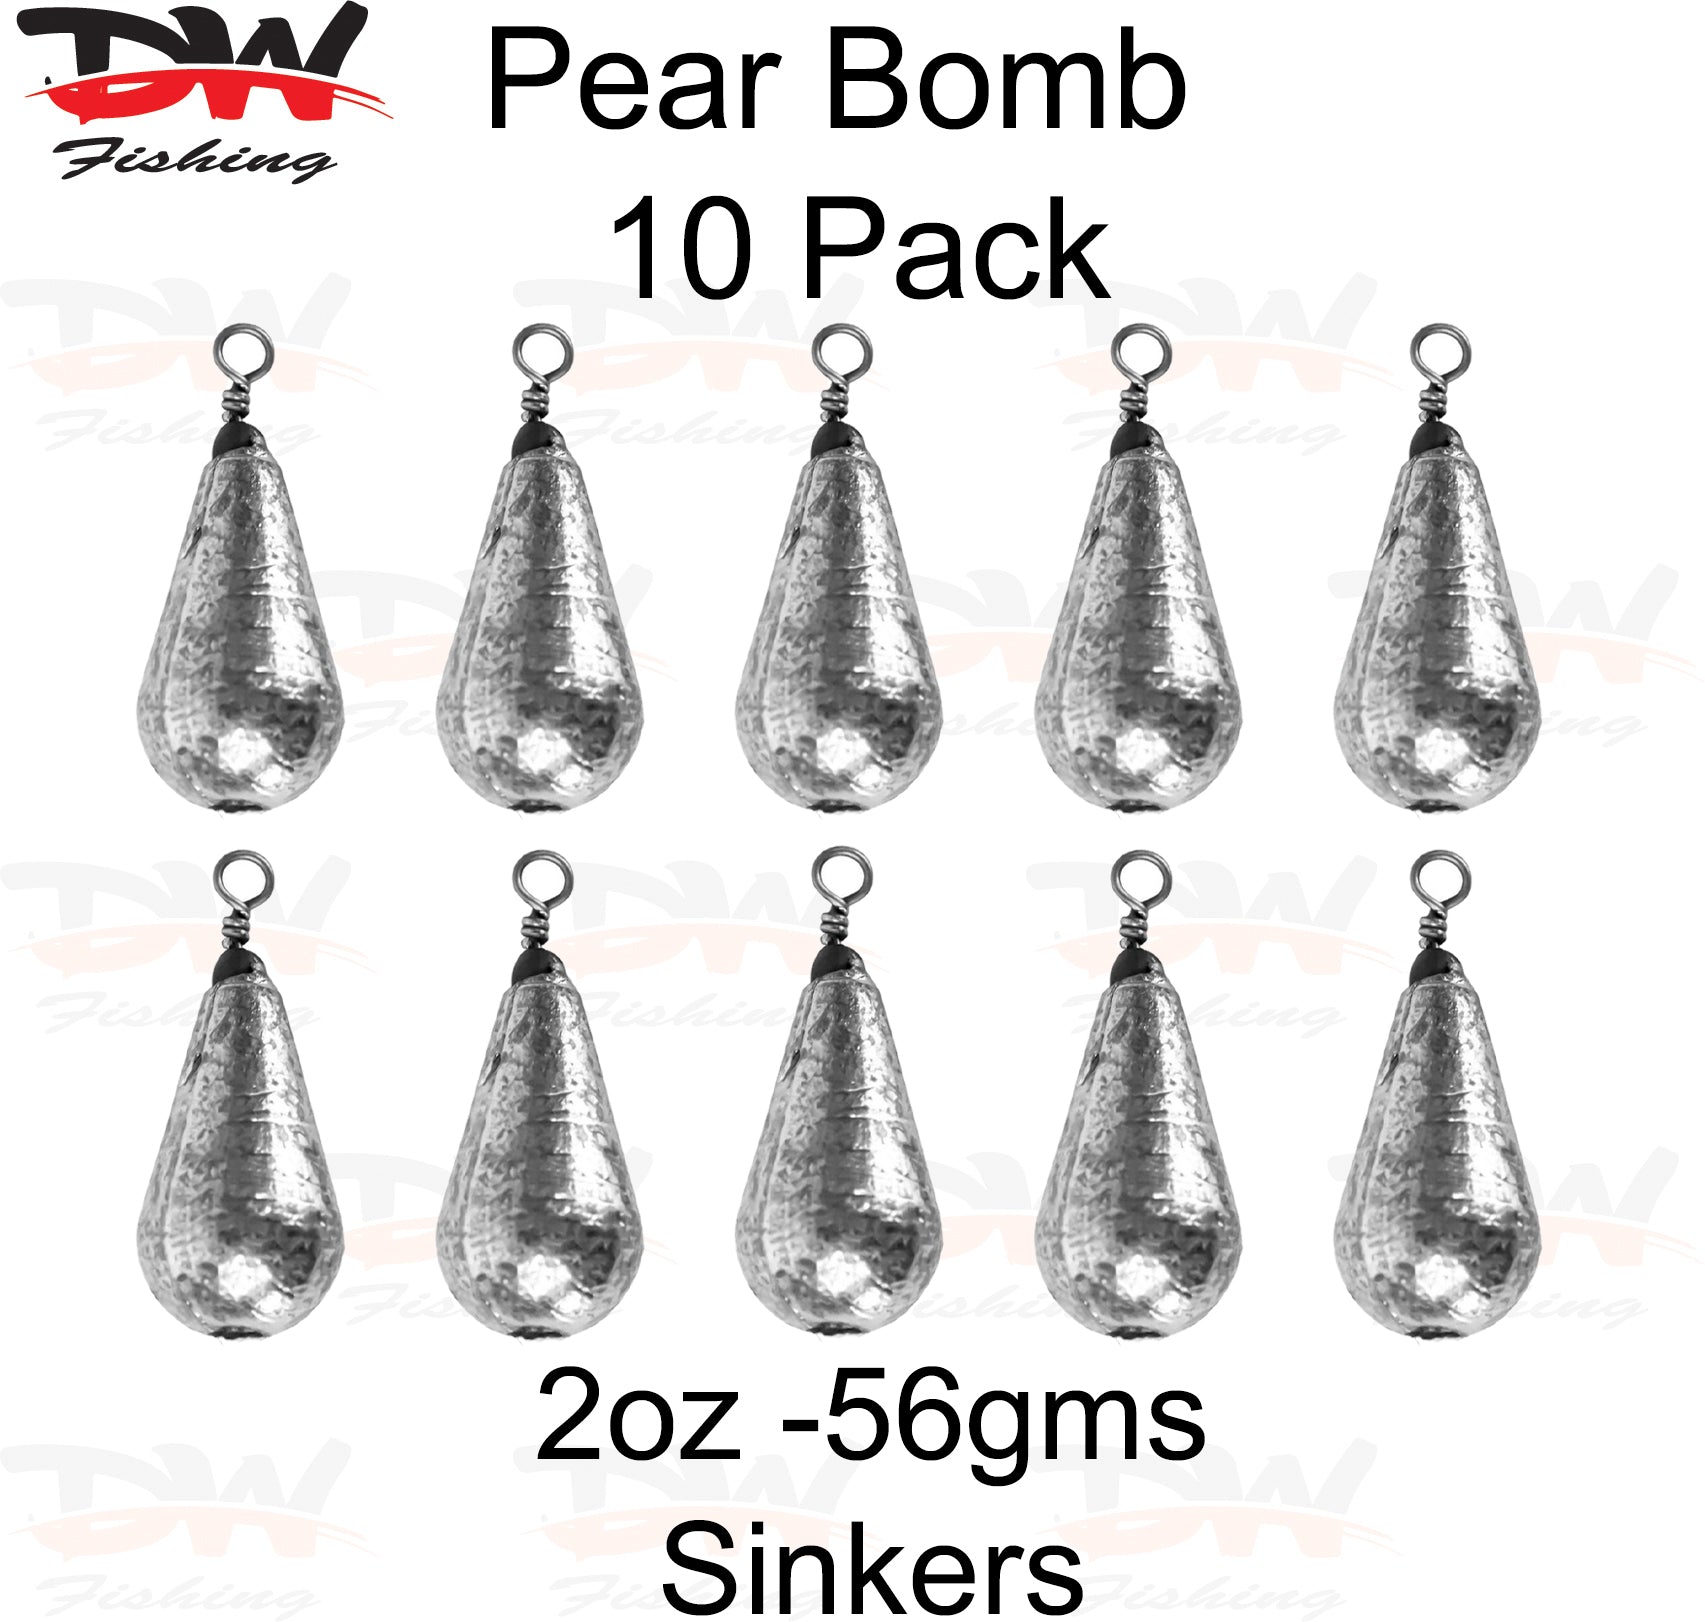 Pear bomb reef sinker 2oz-56gms 10 pack